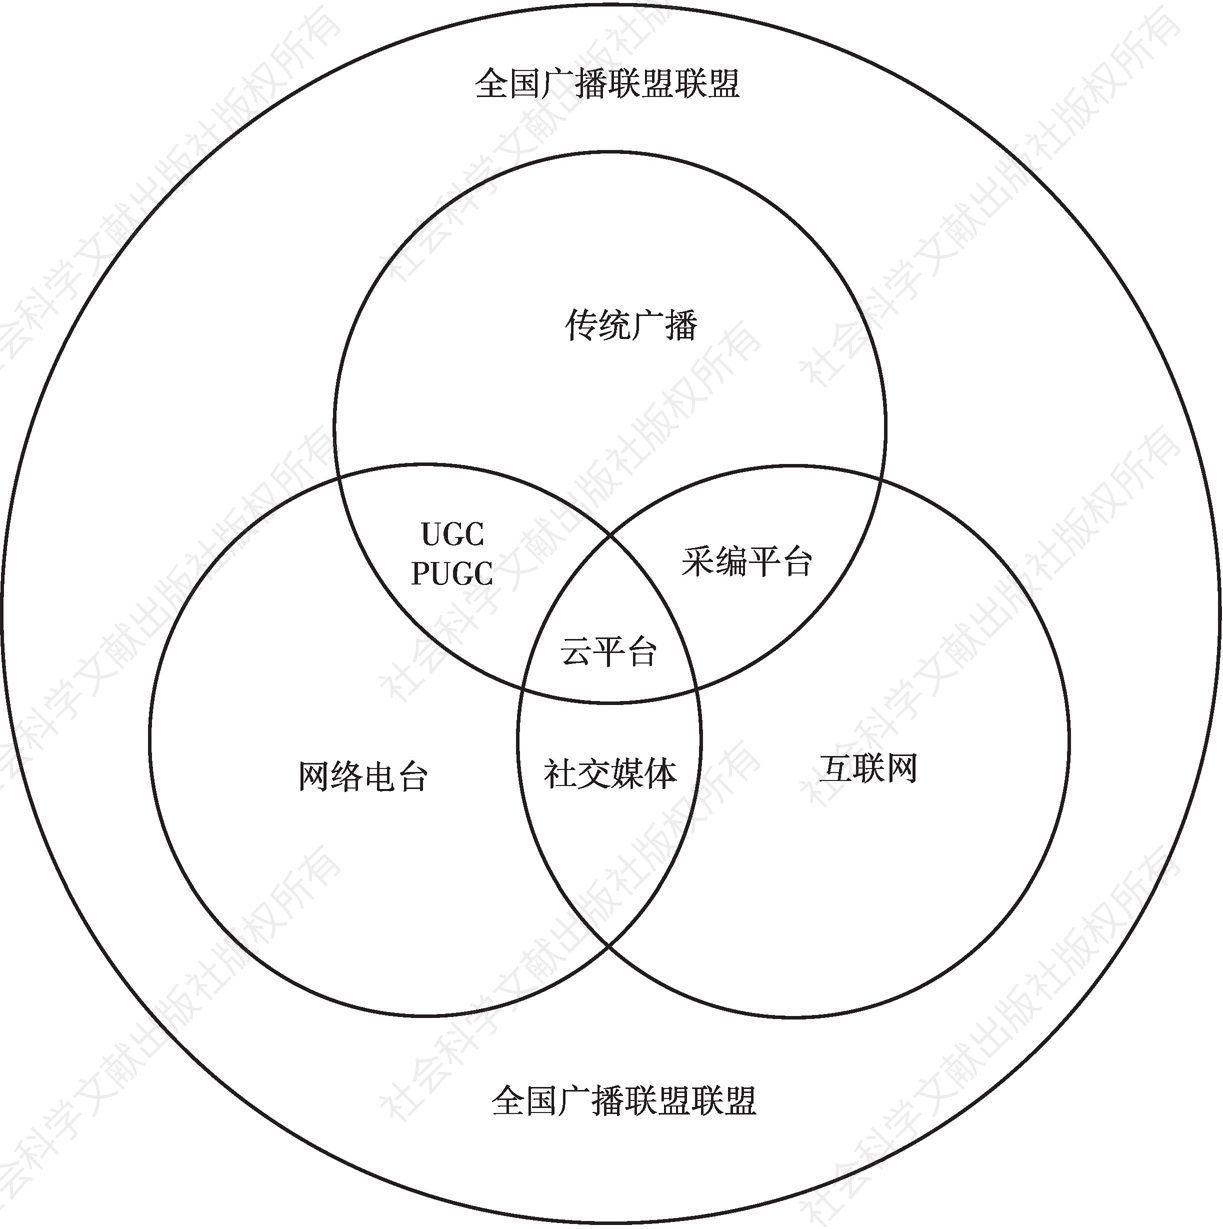 图6 中国广播云平台拓展体系示意